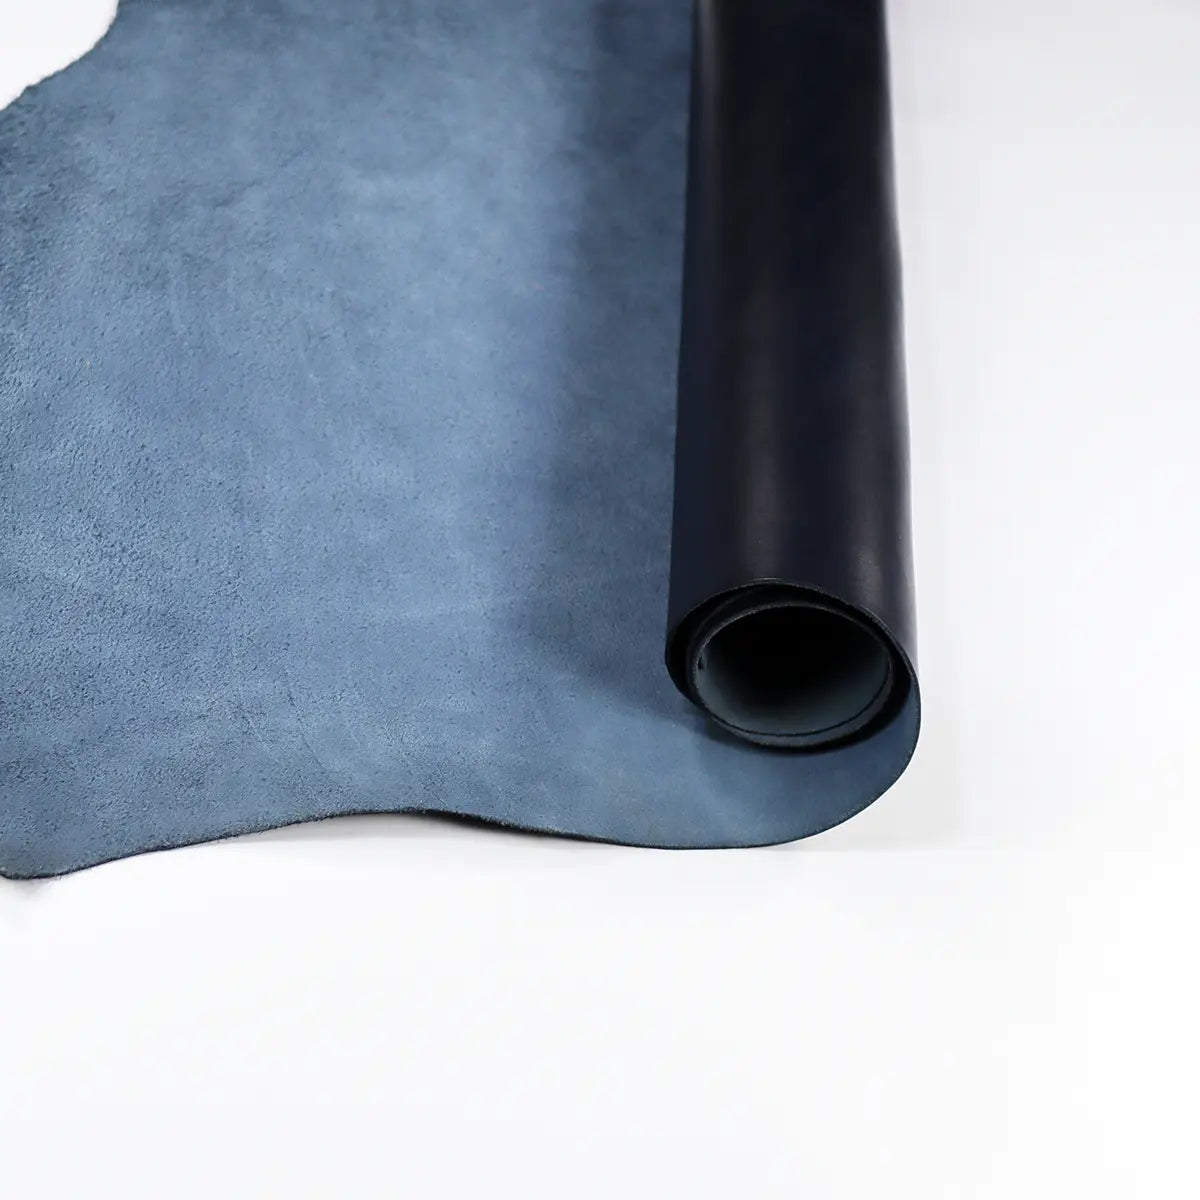 Sepici Newhaven Blue 4-5oz Veg Tan Leather